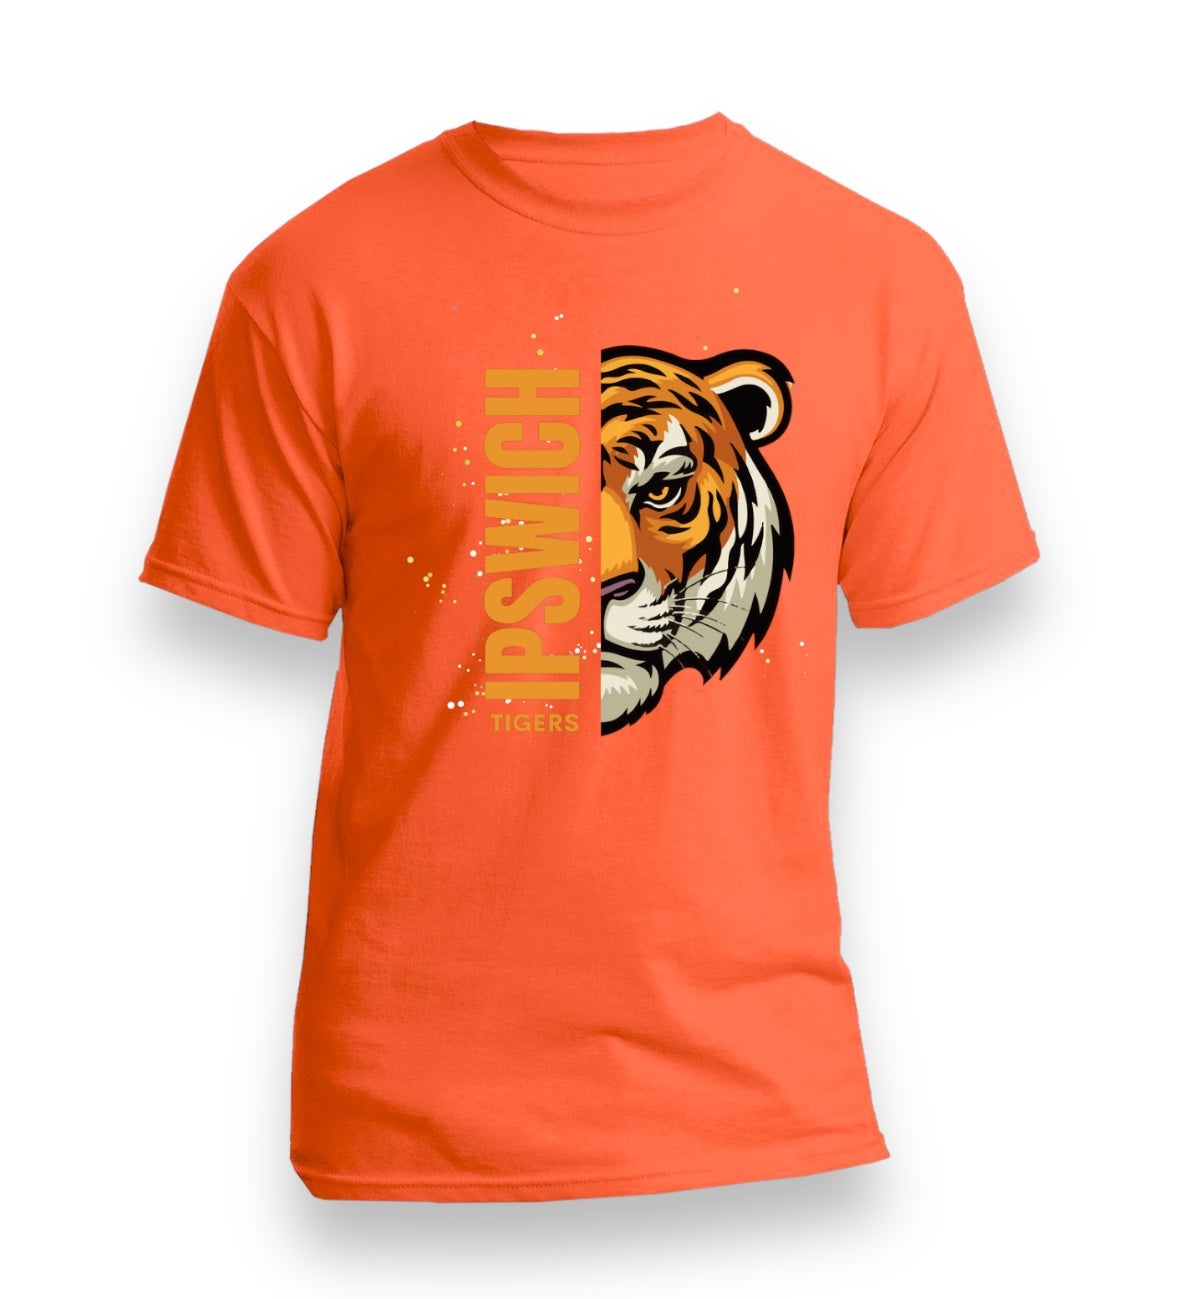 Ipswich Tigers T-shirts (Adults)